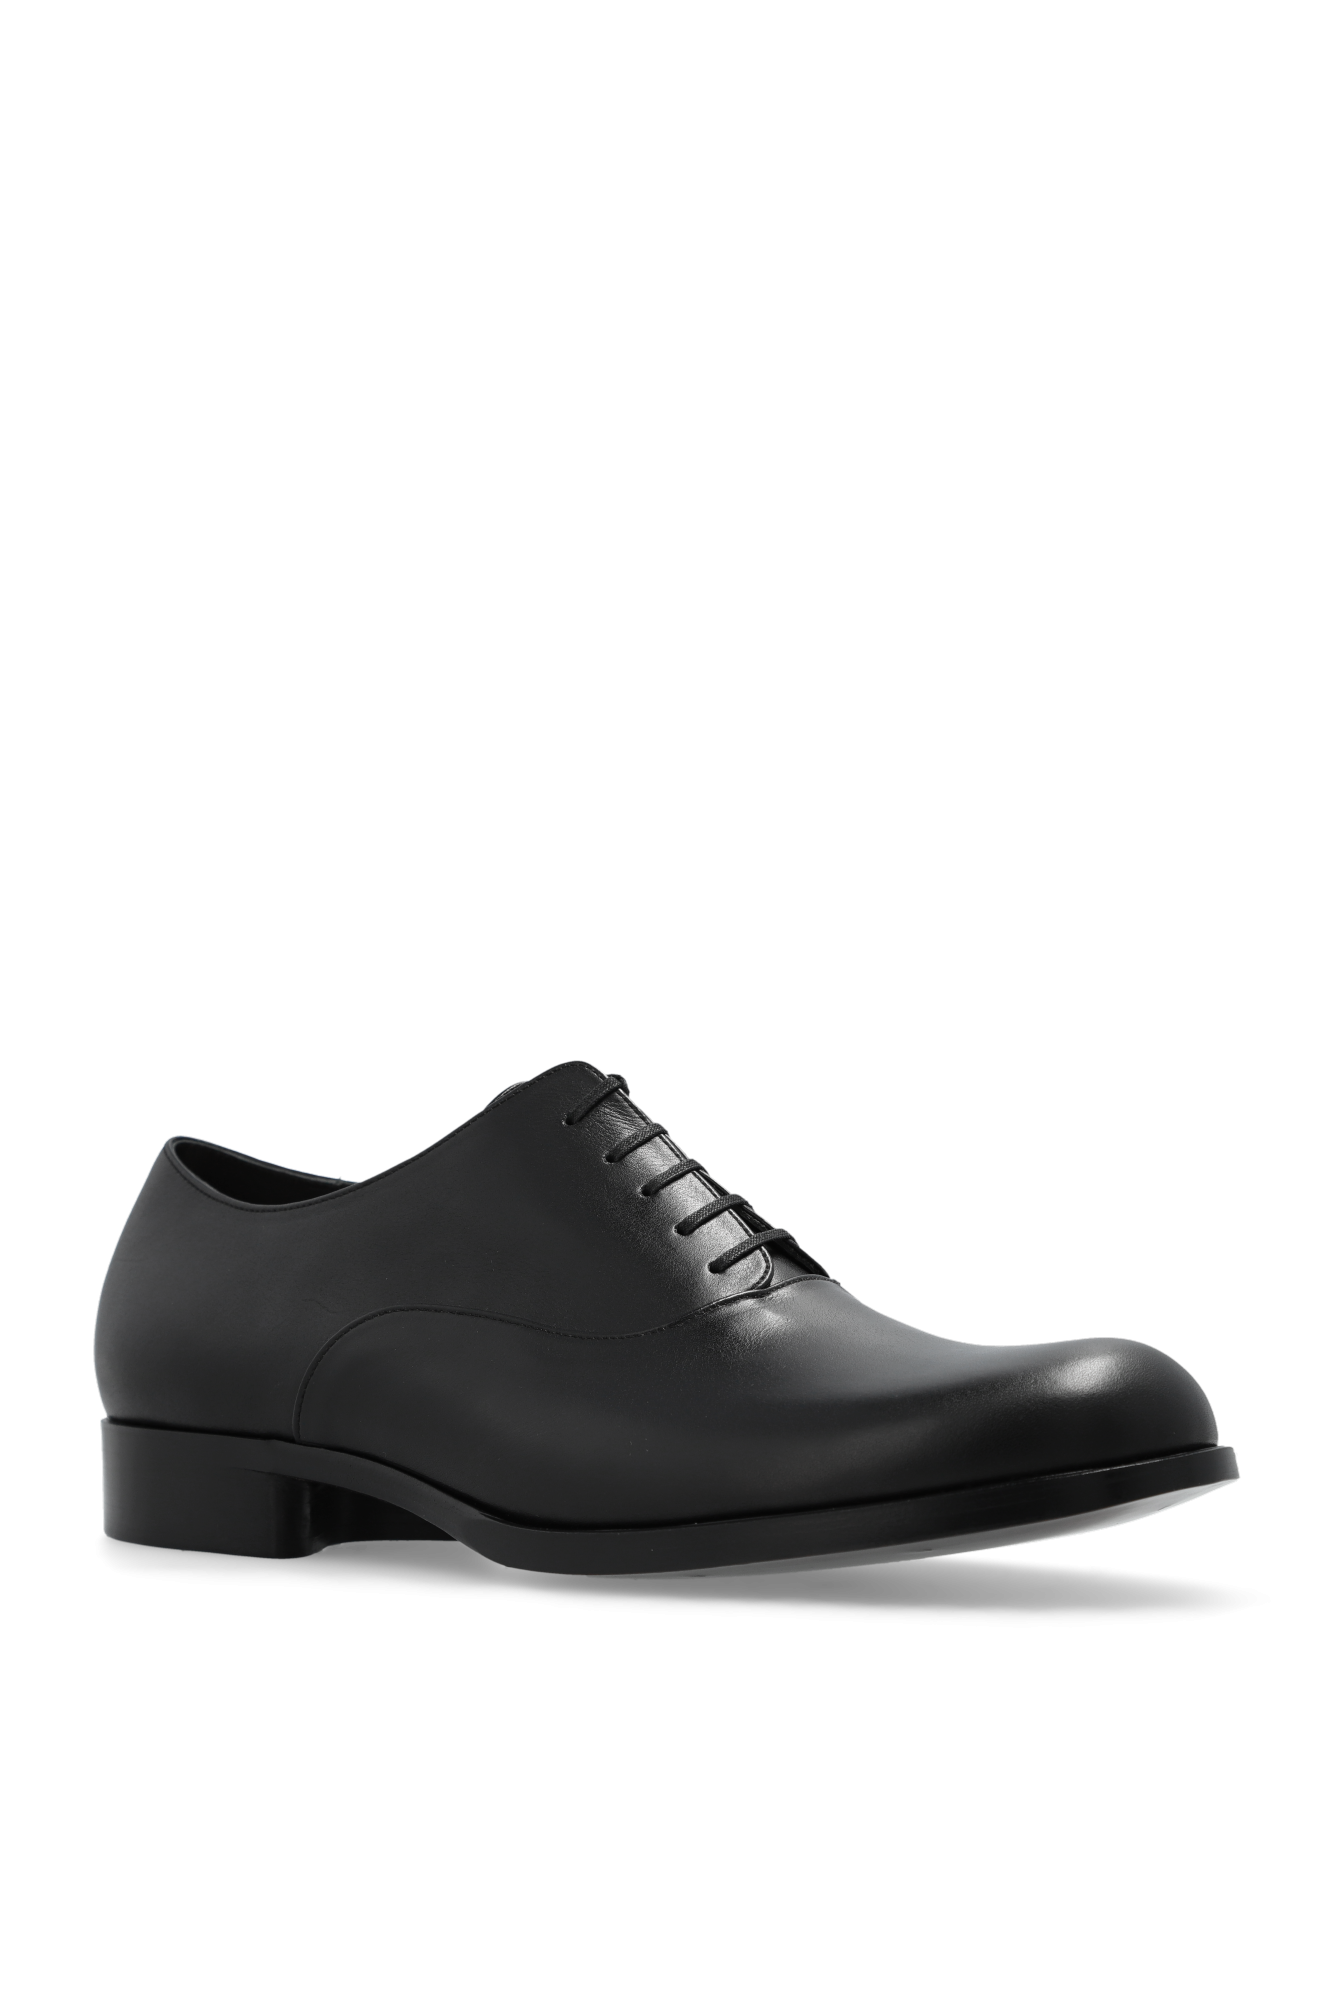 Petrosolaum Leather Oxford shoes | Men's Shoes | Vitkac